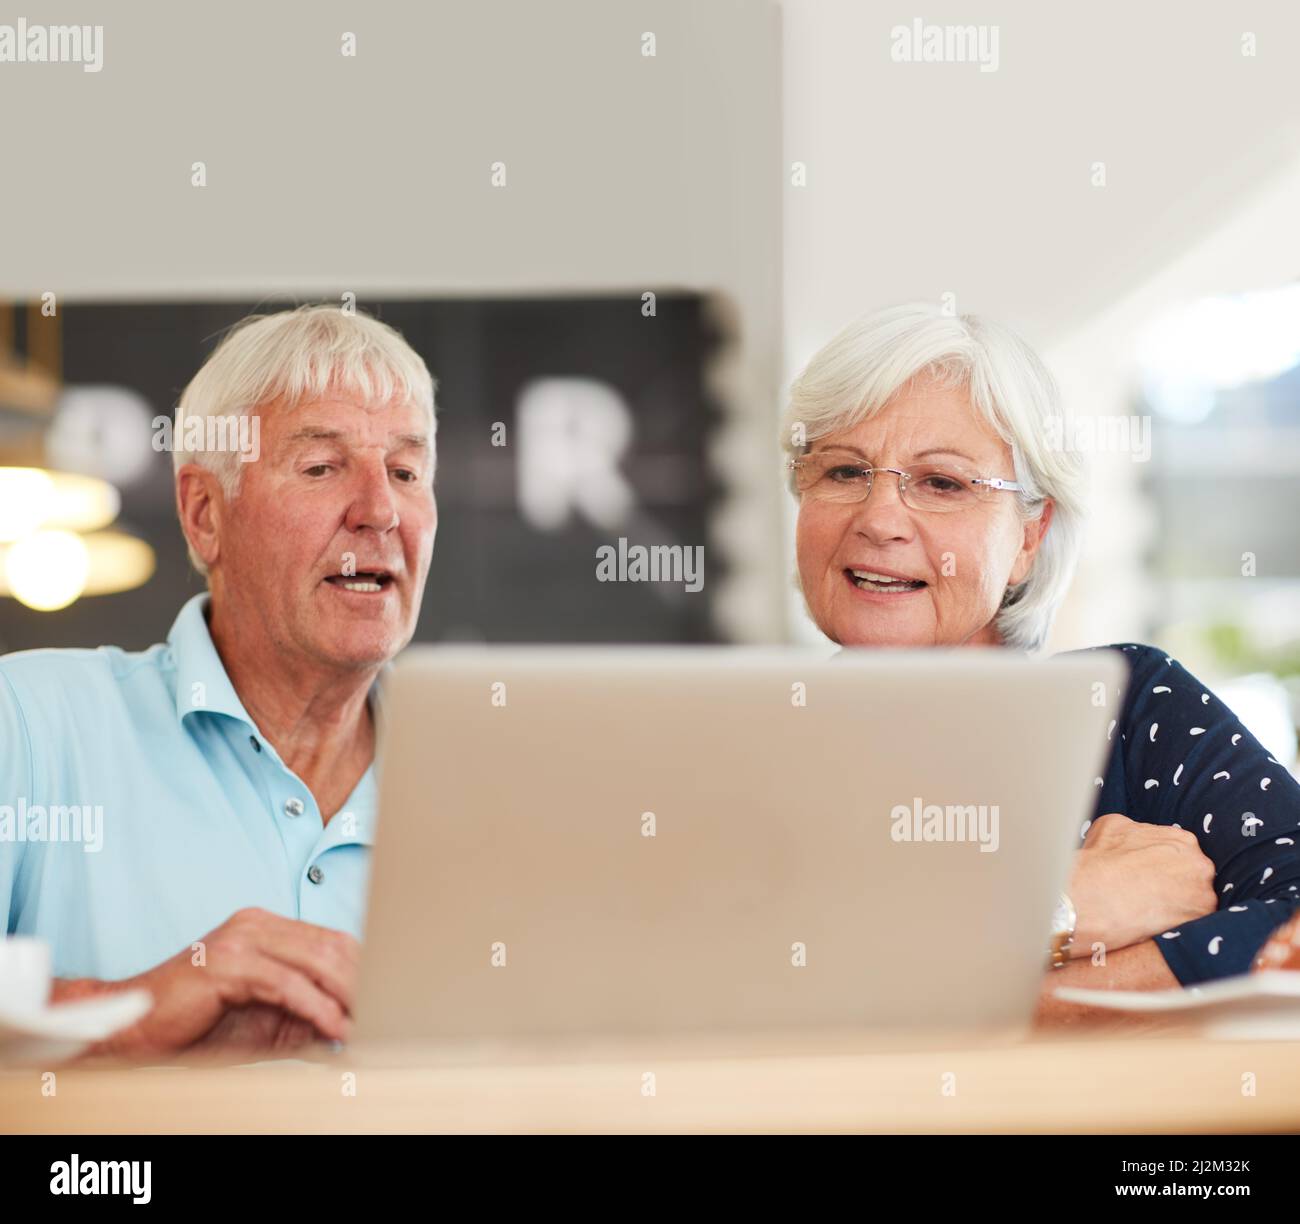 Possiamo utilizzare il wi-fi gratuito per fare qualsiasi cosa. Scatto di una coppia anziana che usa un notebook insieme. Foto Stock